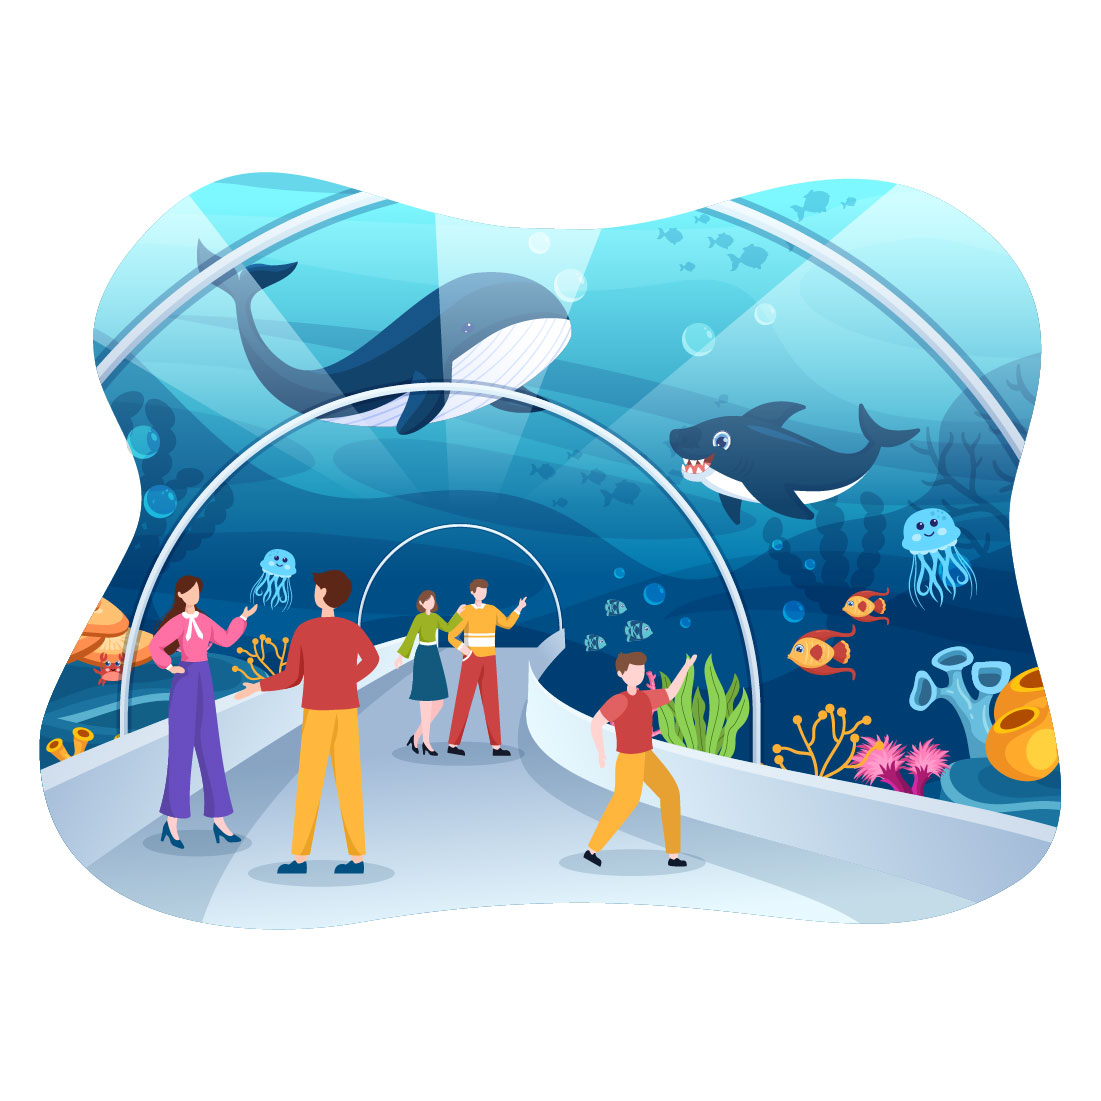 11 Aquarium Flat Illustration cover image.